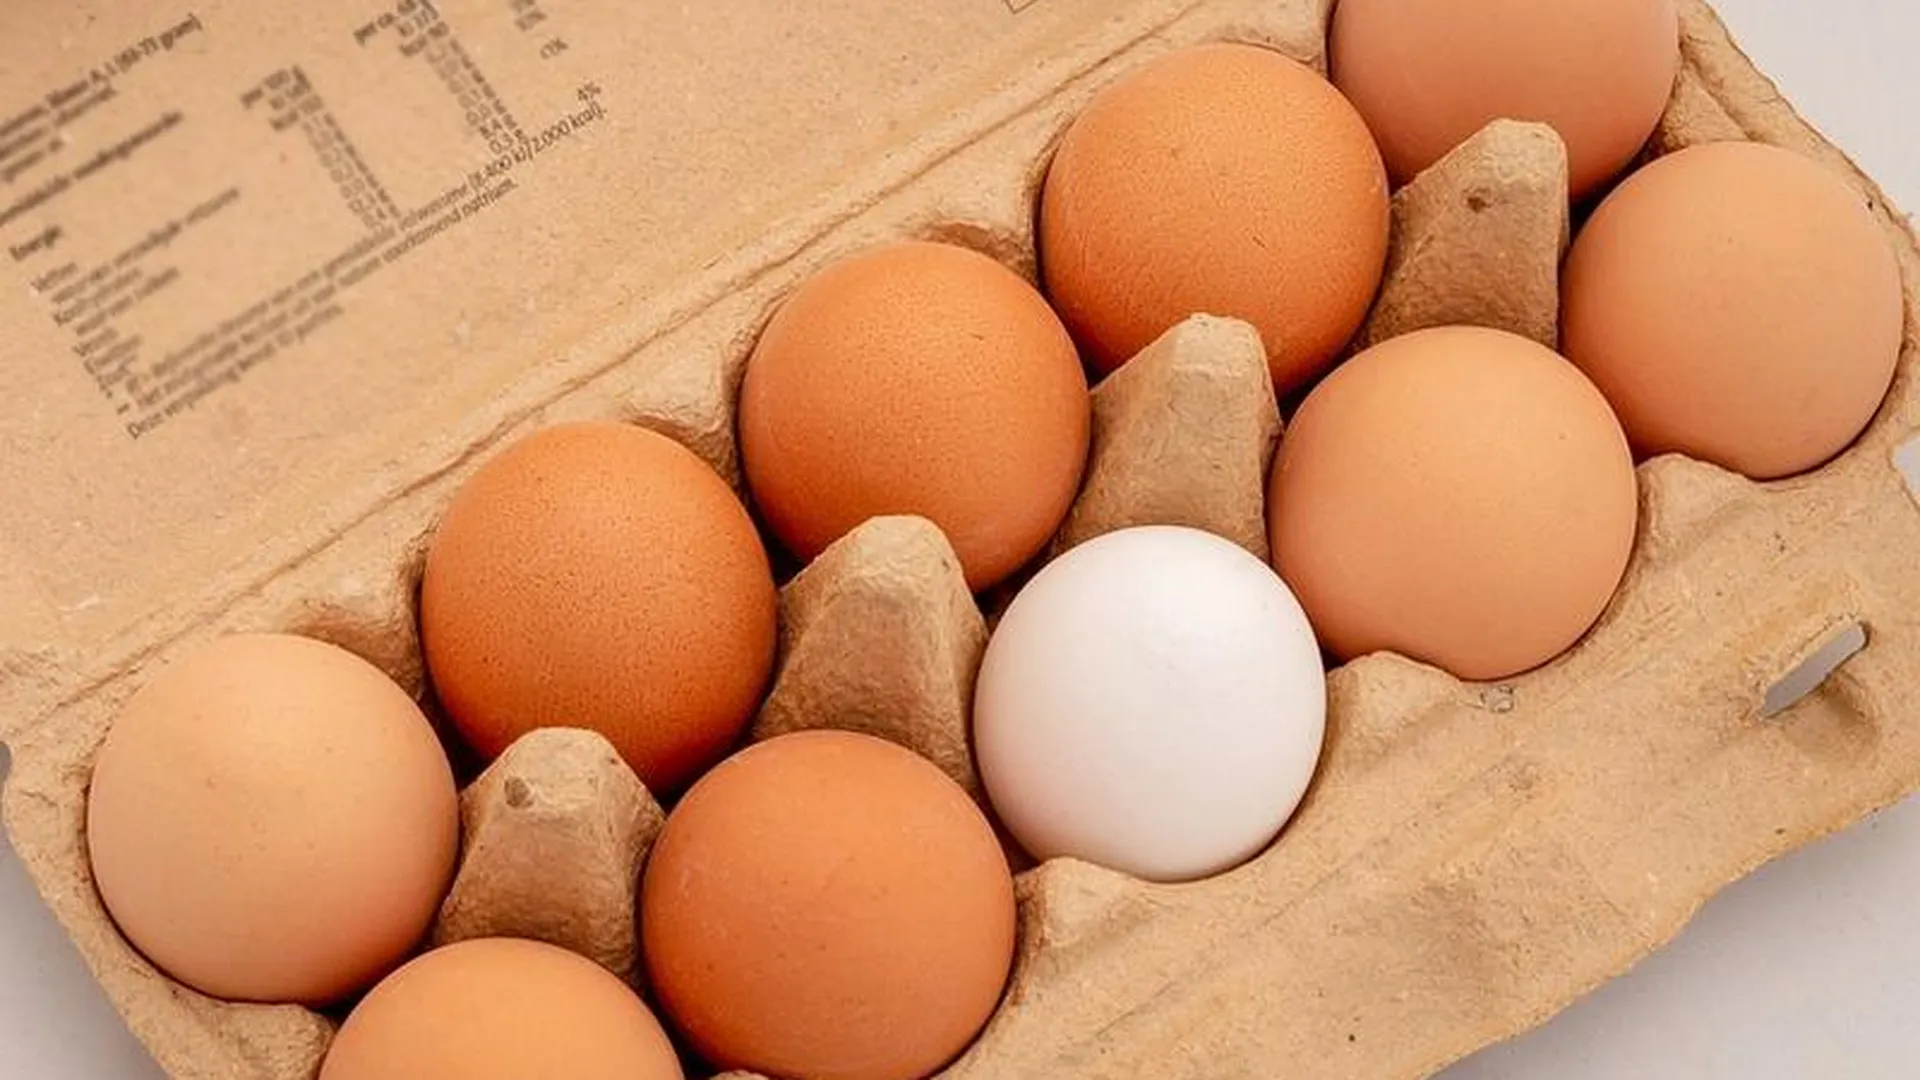 Лишним не будет: аграрии выступают против фасовки яиц «девятками»